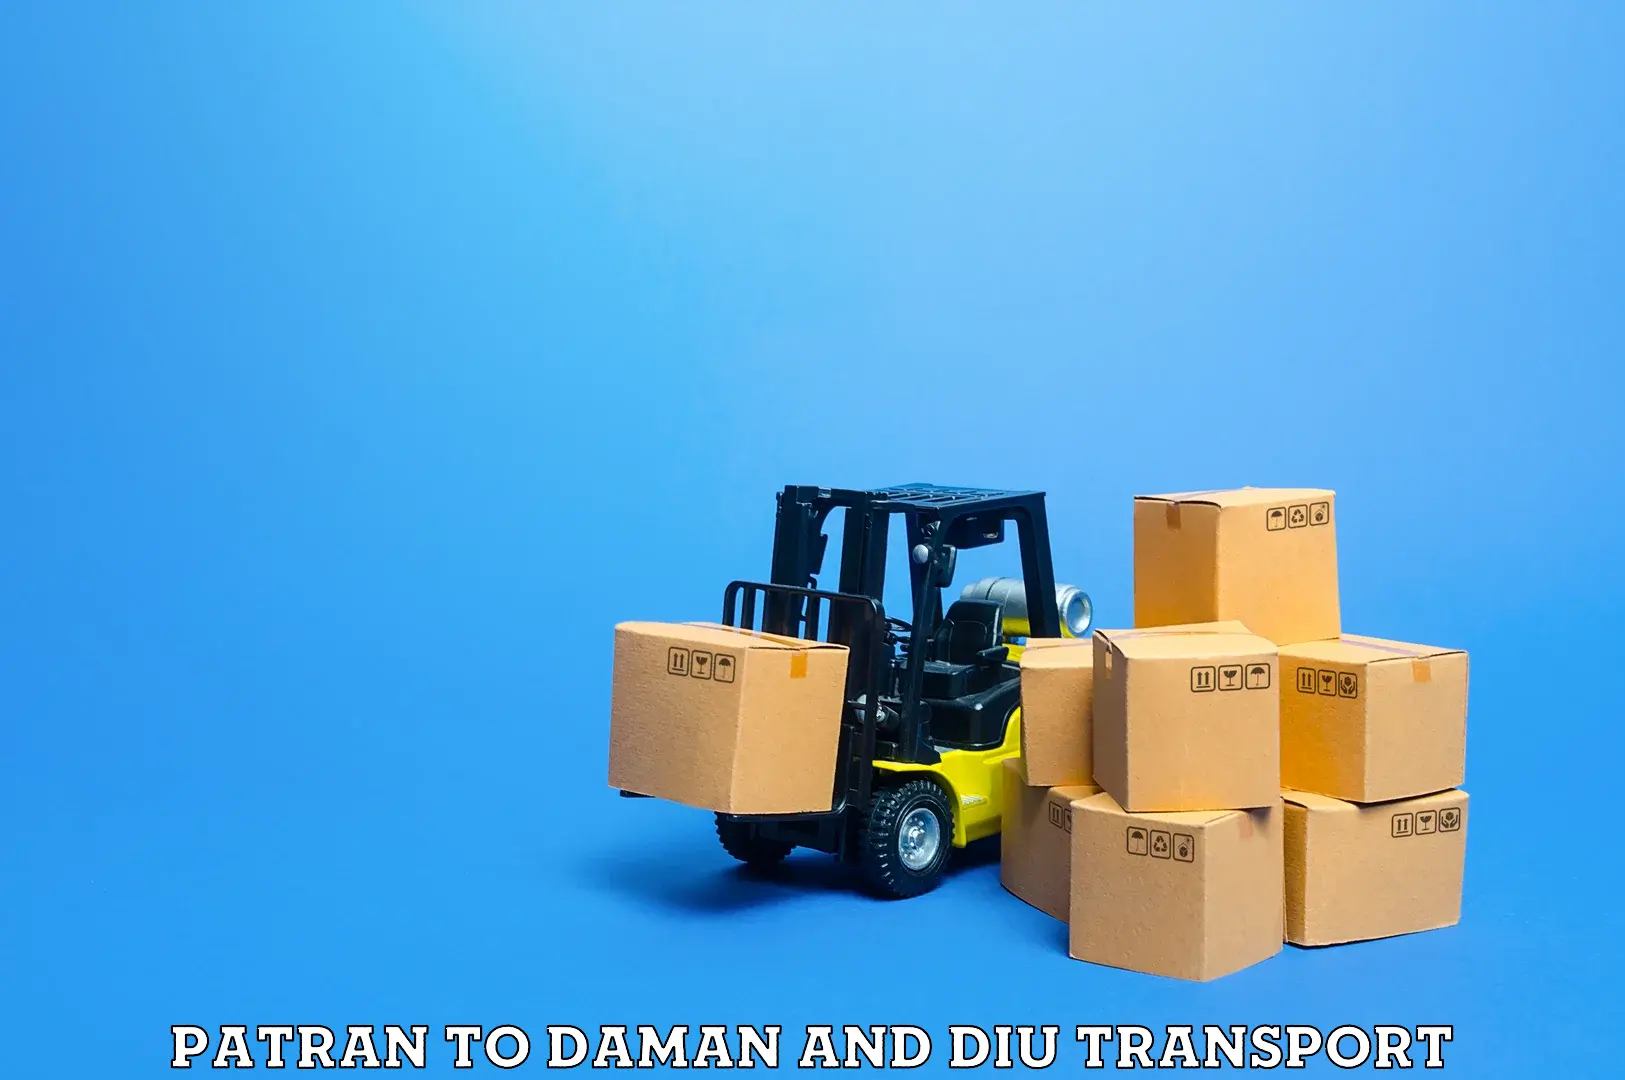 Daily transport service Patran to Daman and Diu